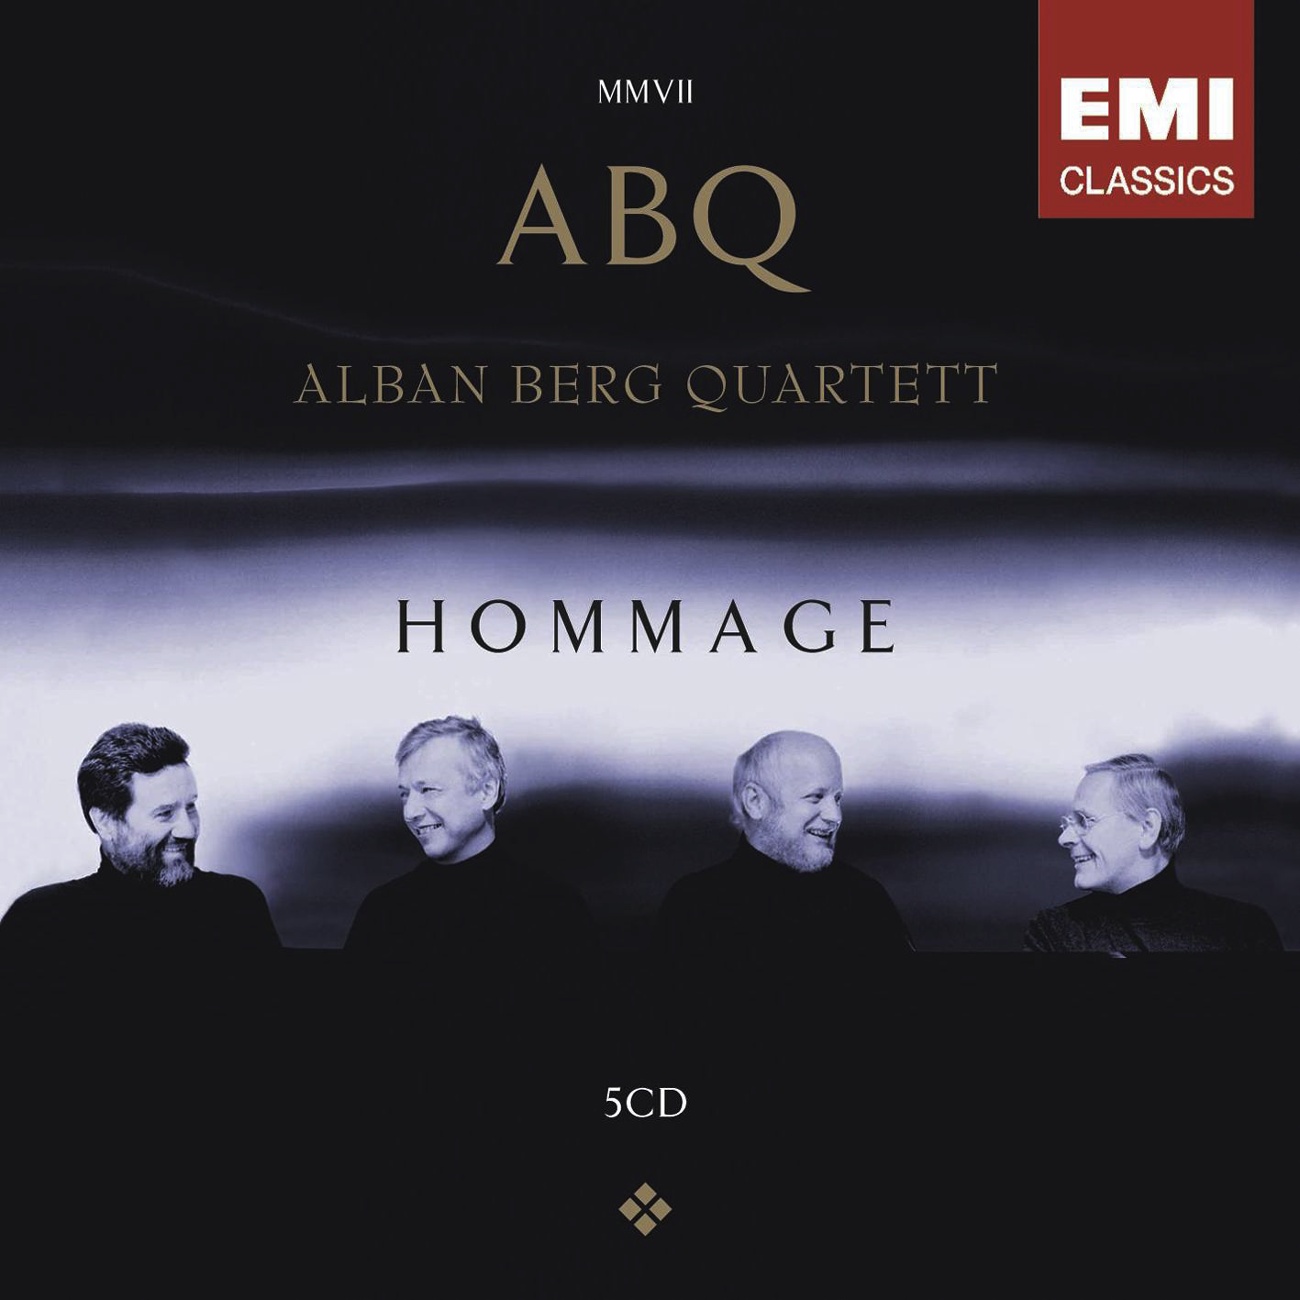 String Quartet No. 1 in E Minor, " From my life": II. Allegro moderato a la Polka